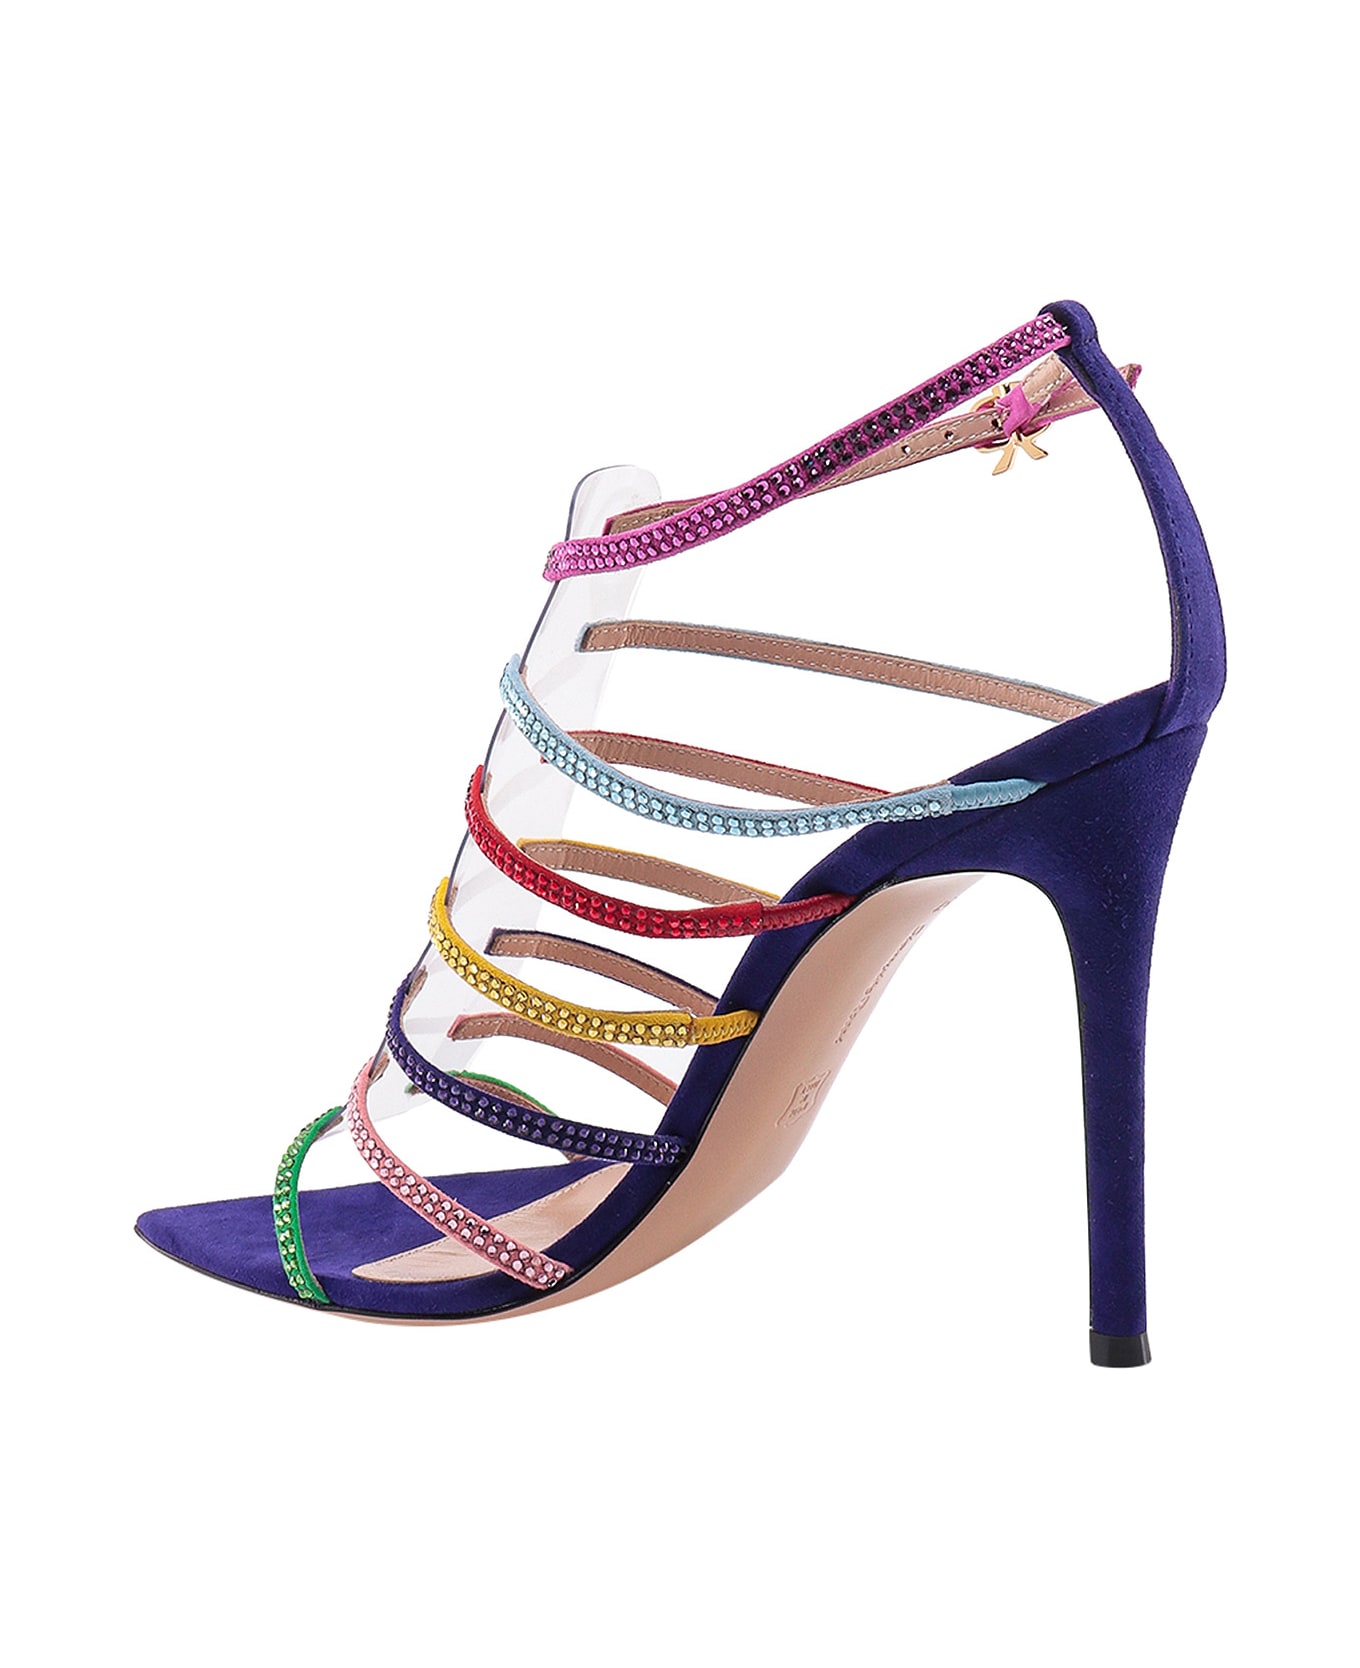 Gianvito Rossi Mirage Sandals - Multicolor